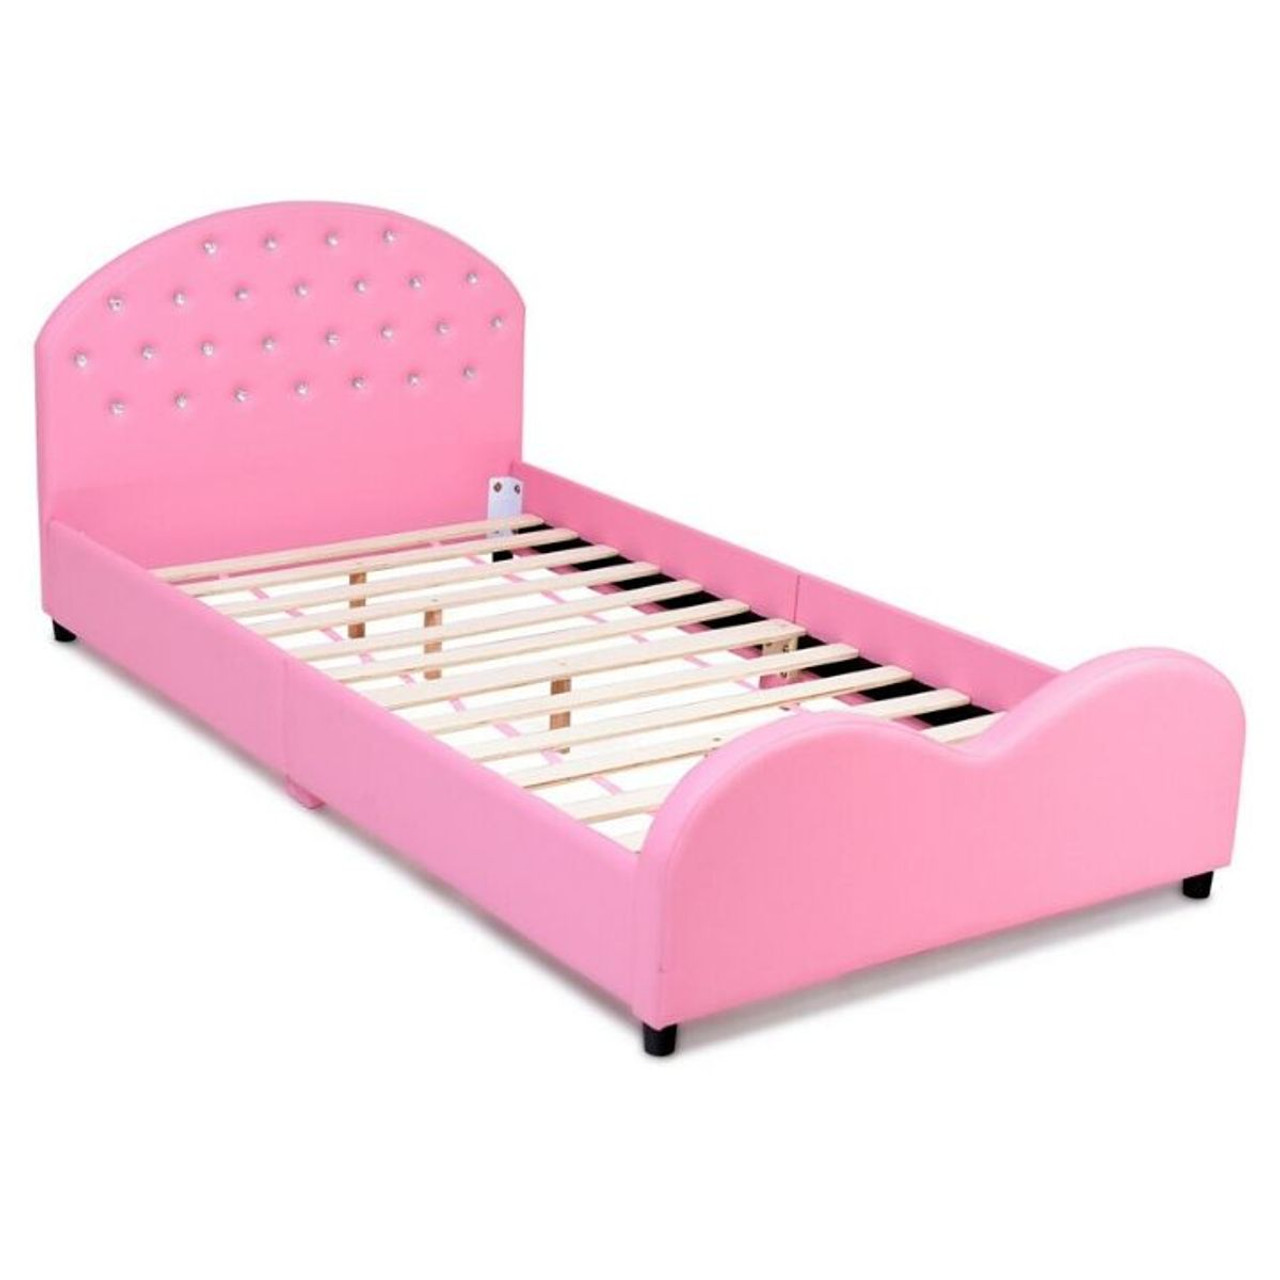 Pink Kids' Upholstered Platform Wooden Bed Frame product image